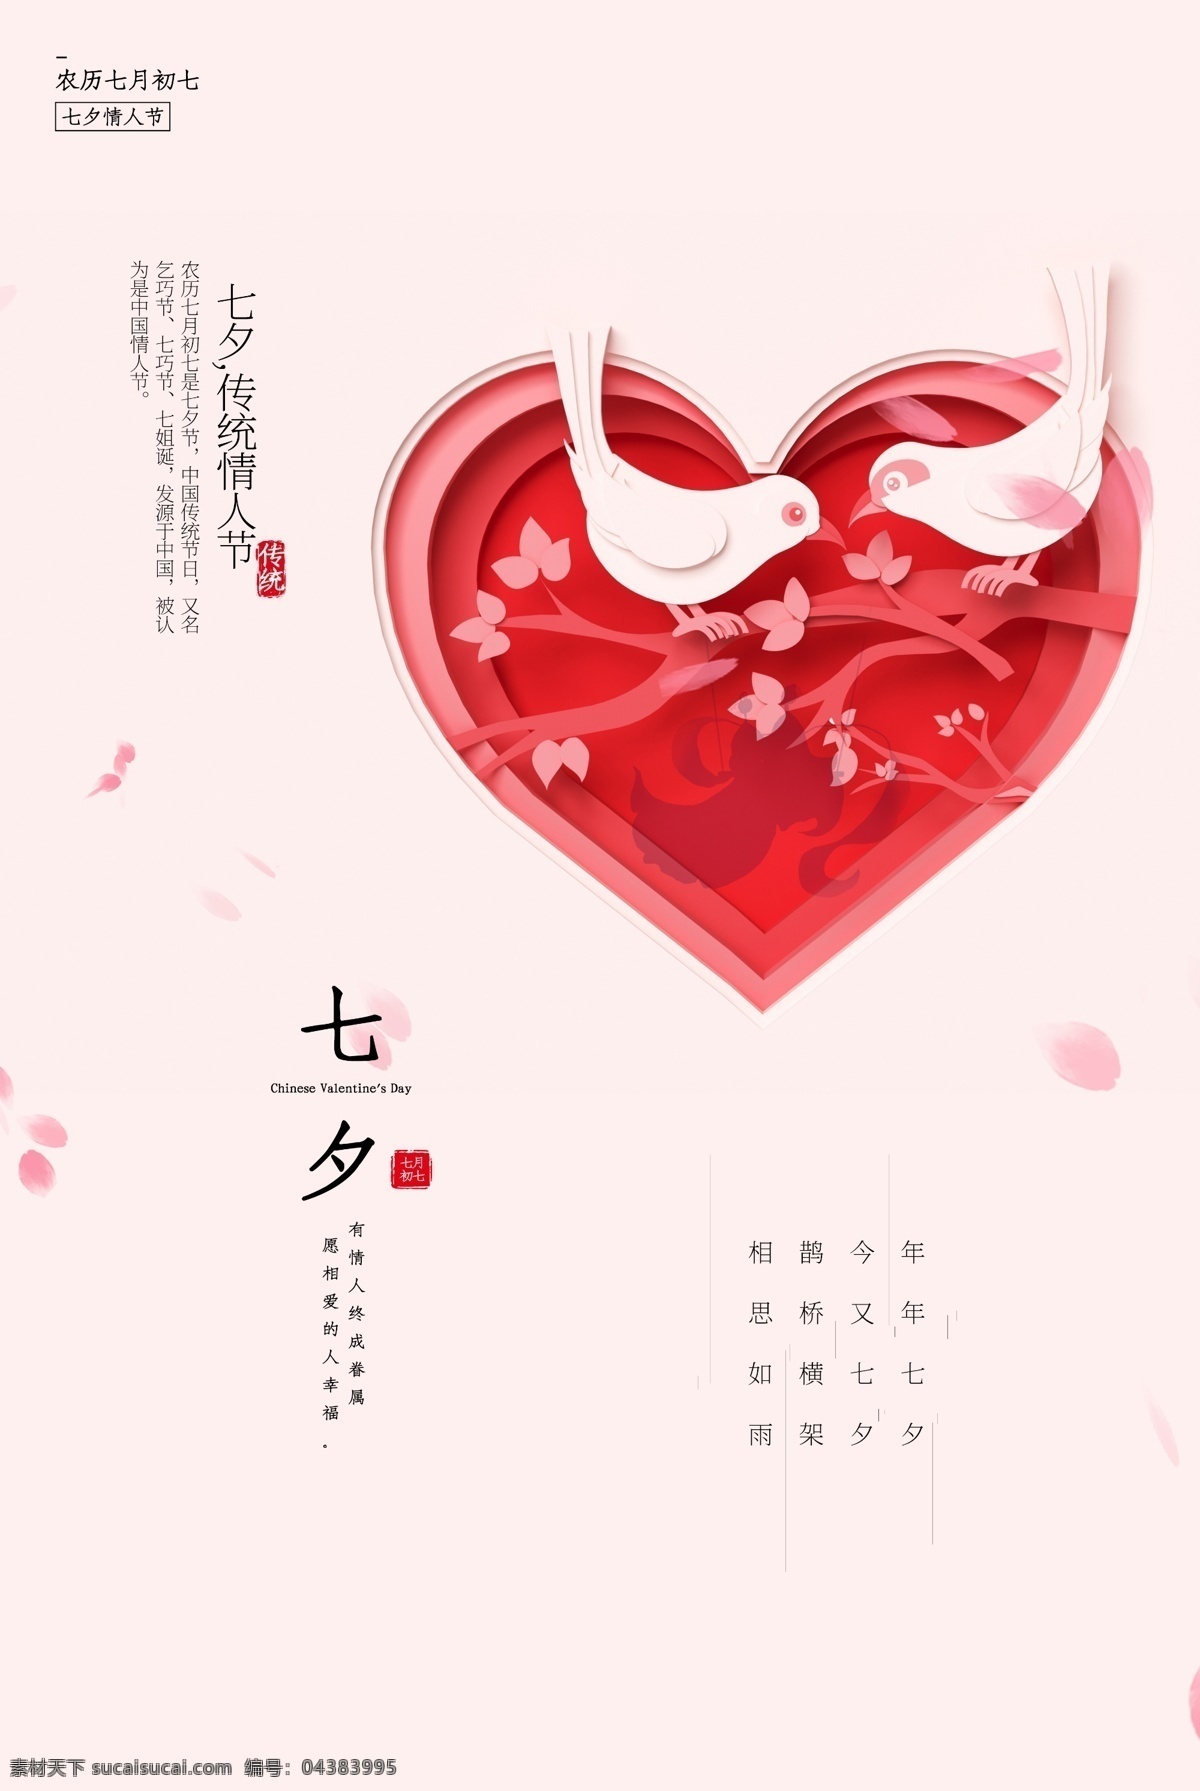 七夕 传统节日 促销活动 海报 传统 节日 促销 活动 传统节日海报